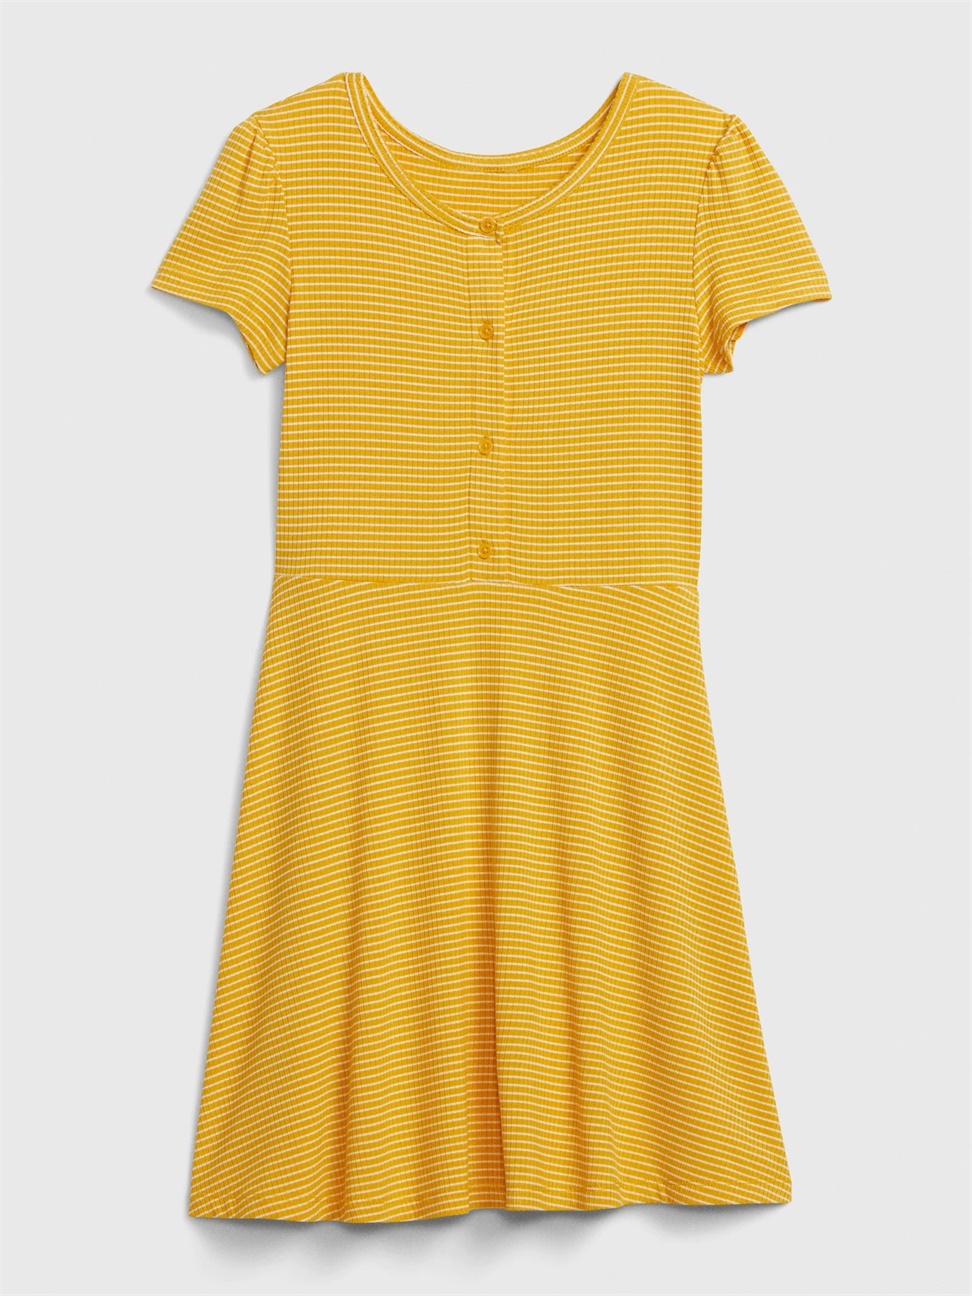 女童|簡約圓領短袖洋裝-黃色條紋